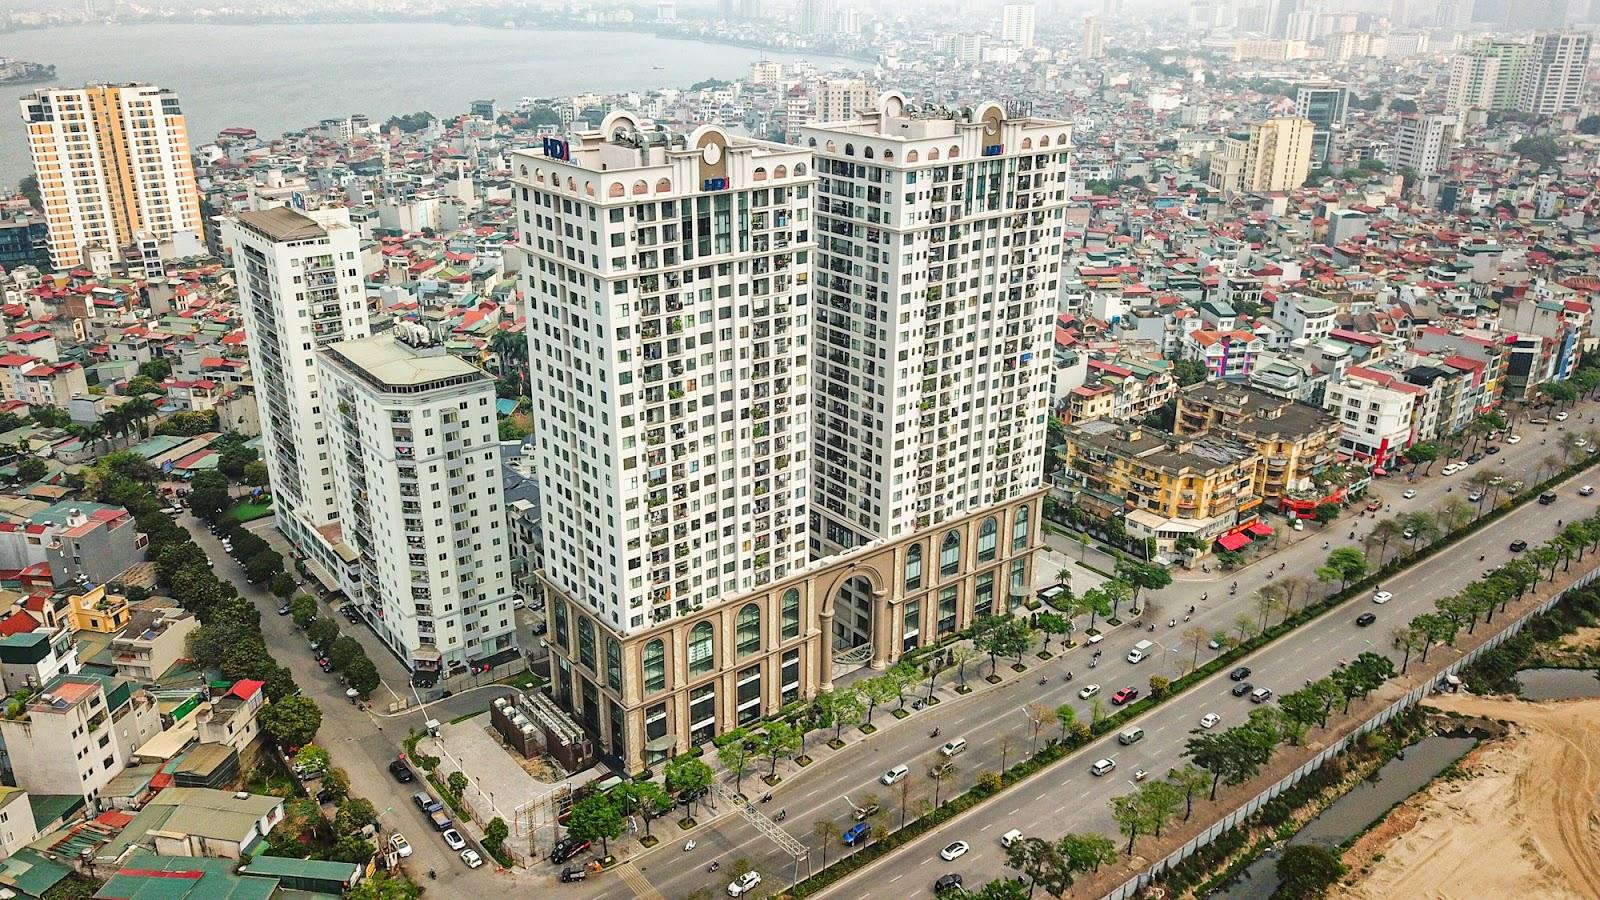 ‏[Photo Essay] Chung cư quanh TTTM đắt nhất thủ đô Lotte Mall Hanoi - Võ Chí Công đã hình thành mặt bằng giá mới lên đến 100 triệu đồng/m2 - Ảnh 5.